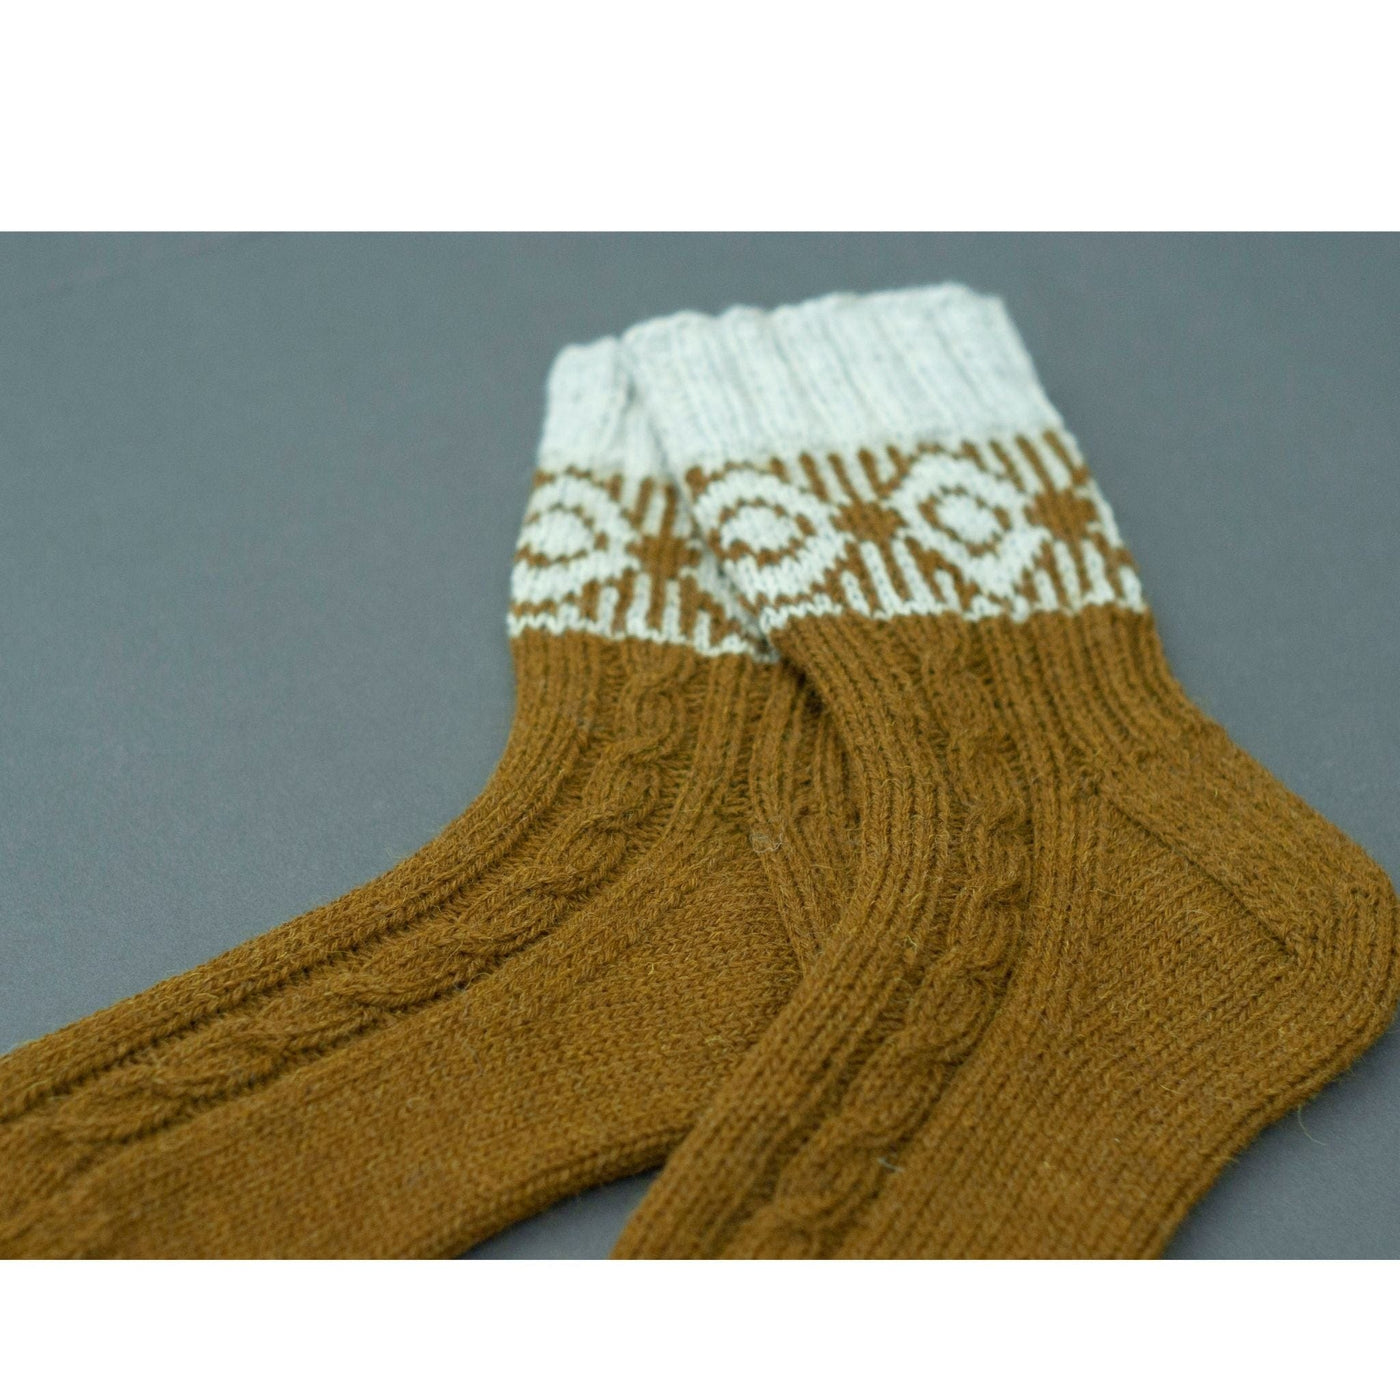 Moongate Socks Kit by Virginia Sattler-Reimer in Rambler